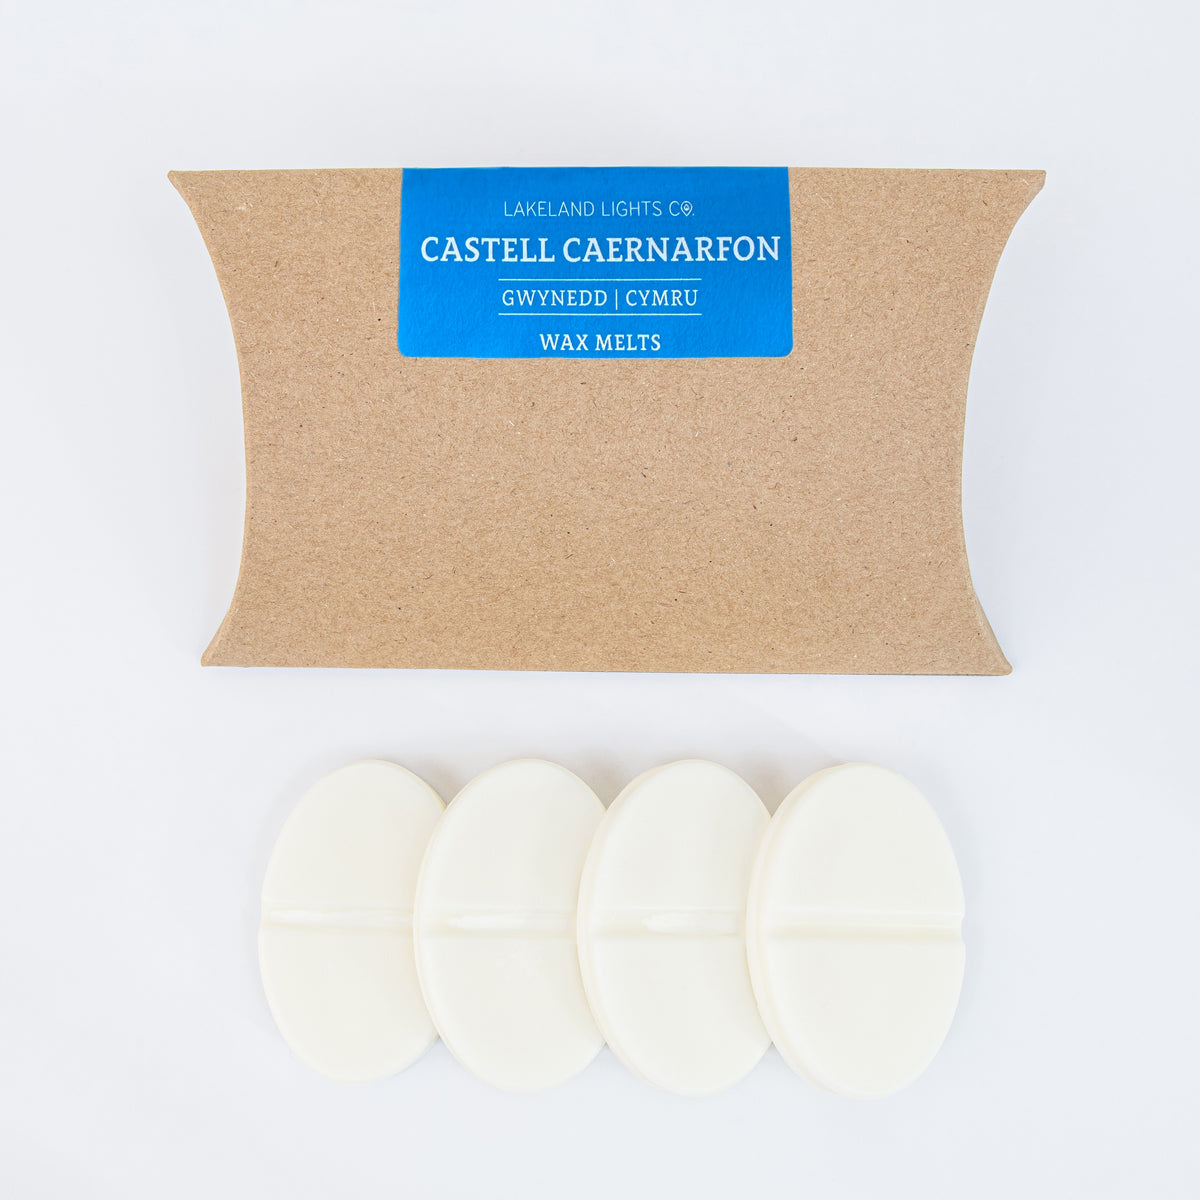 Castell Caernarfon Wax Melts